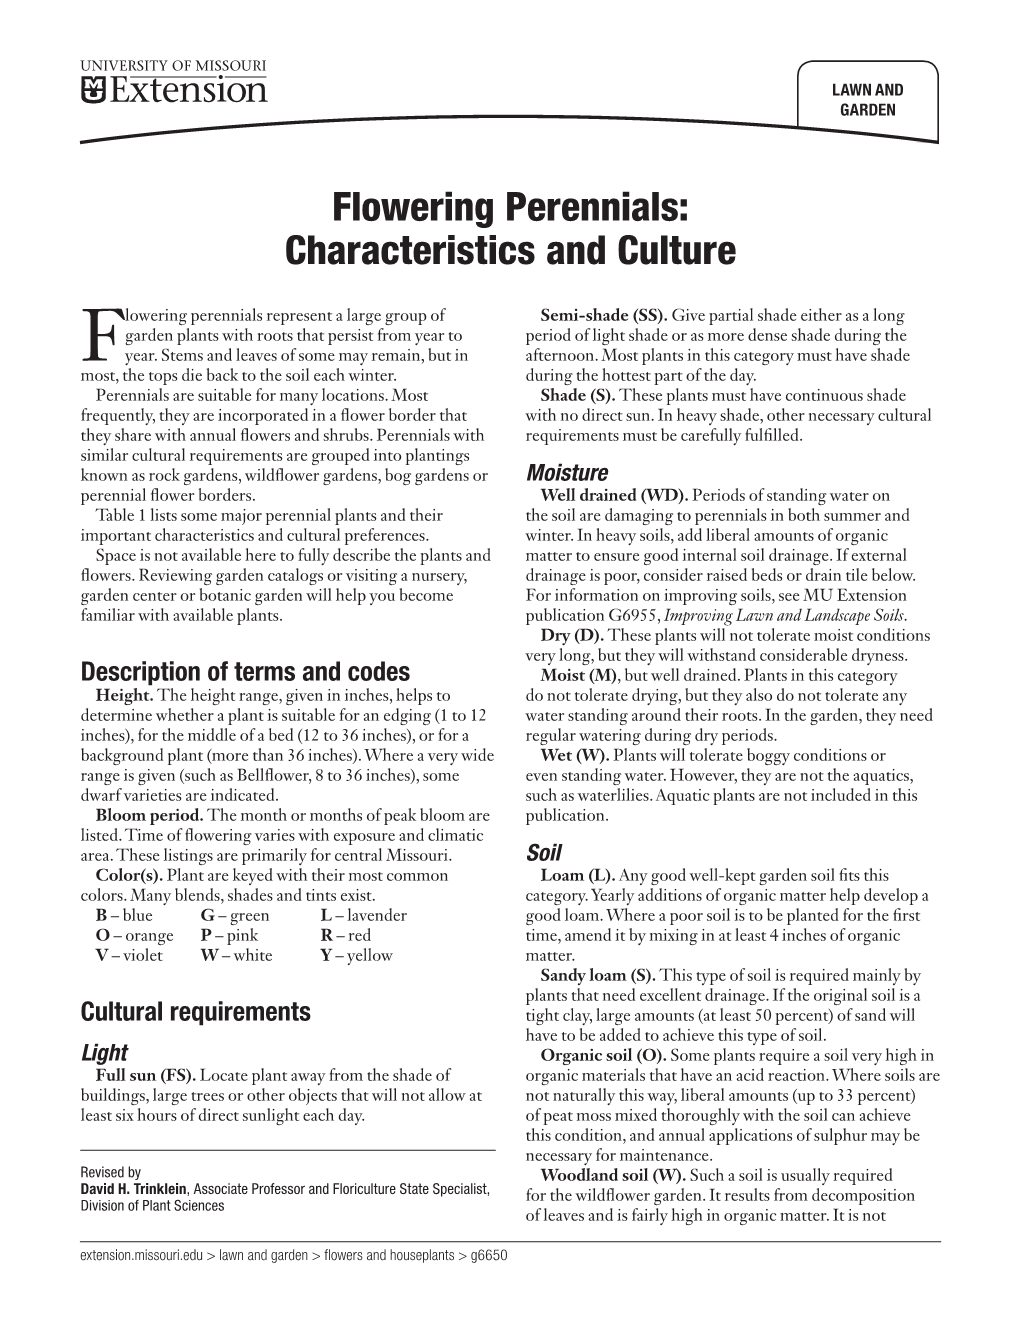 Flowering Perennials: Characteristics and Culture